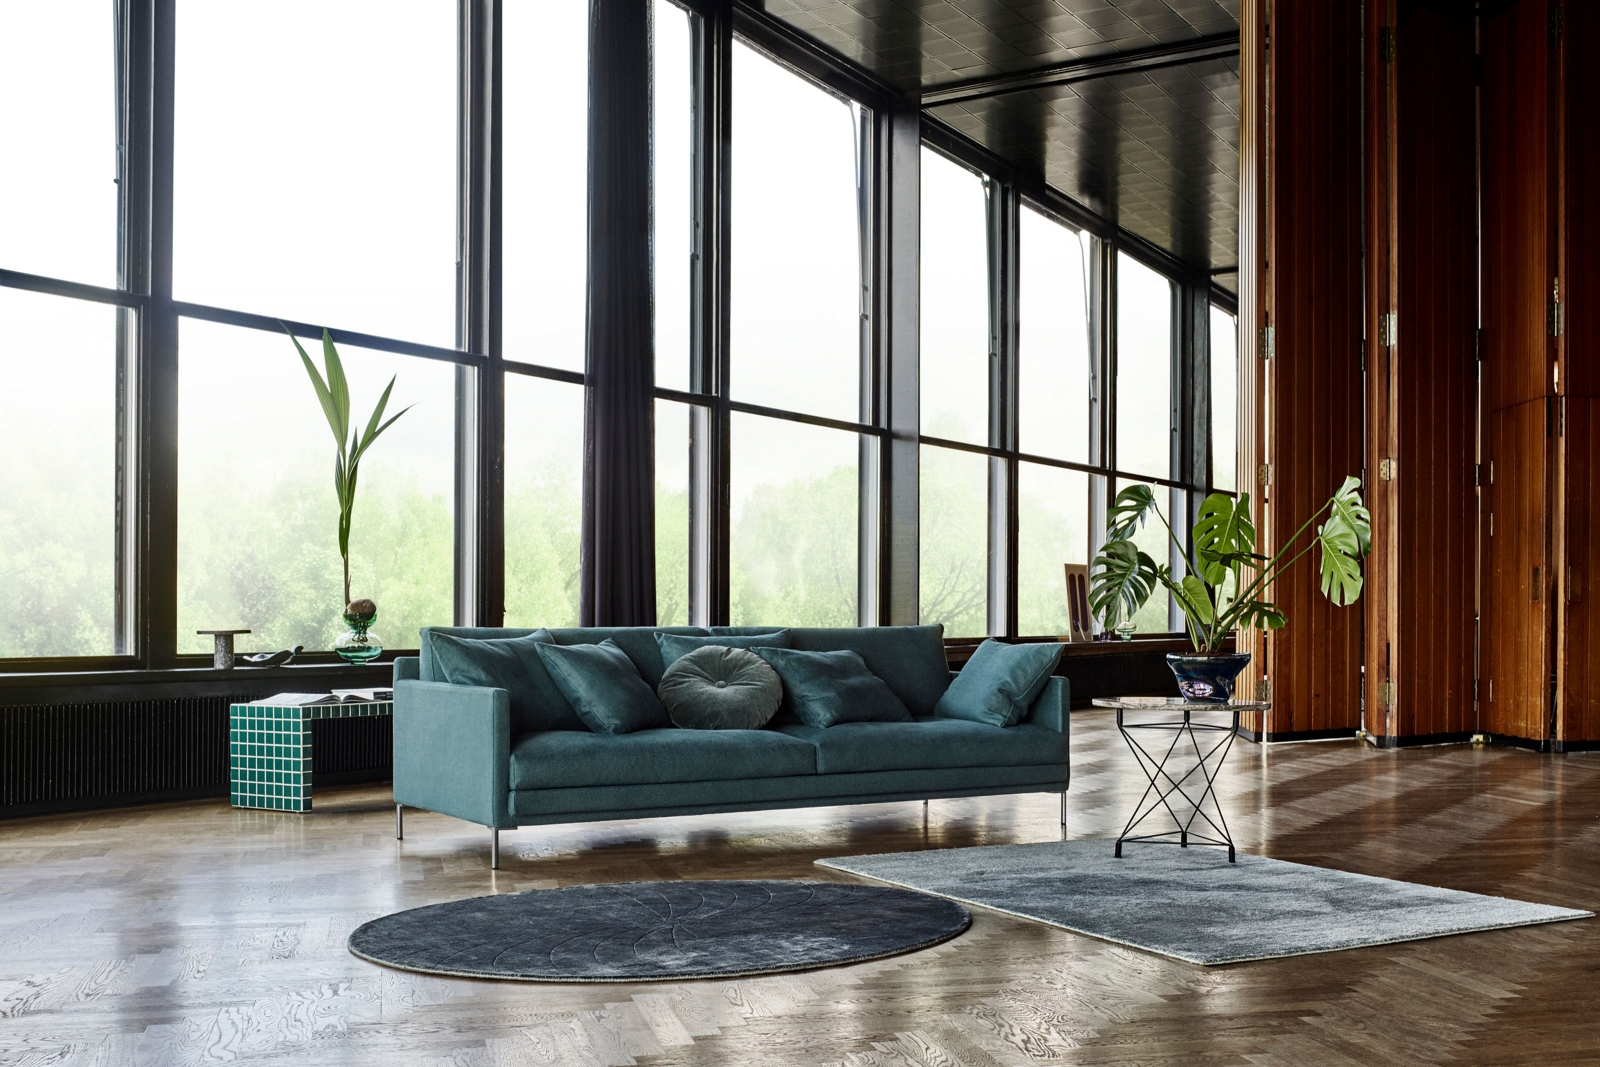 «Ash» ist ein klassisches und zeitloses Sofa, das Komfort, Qualität und Funktionalität vereint. Dank weicher Sitz- und Rückenkissen ist es sehr bequem und lädt zum Wohlfühlen und Entspannen ein. Eilersen.